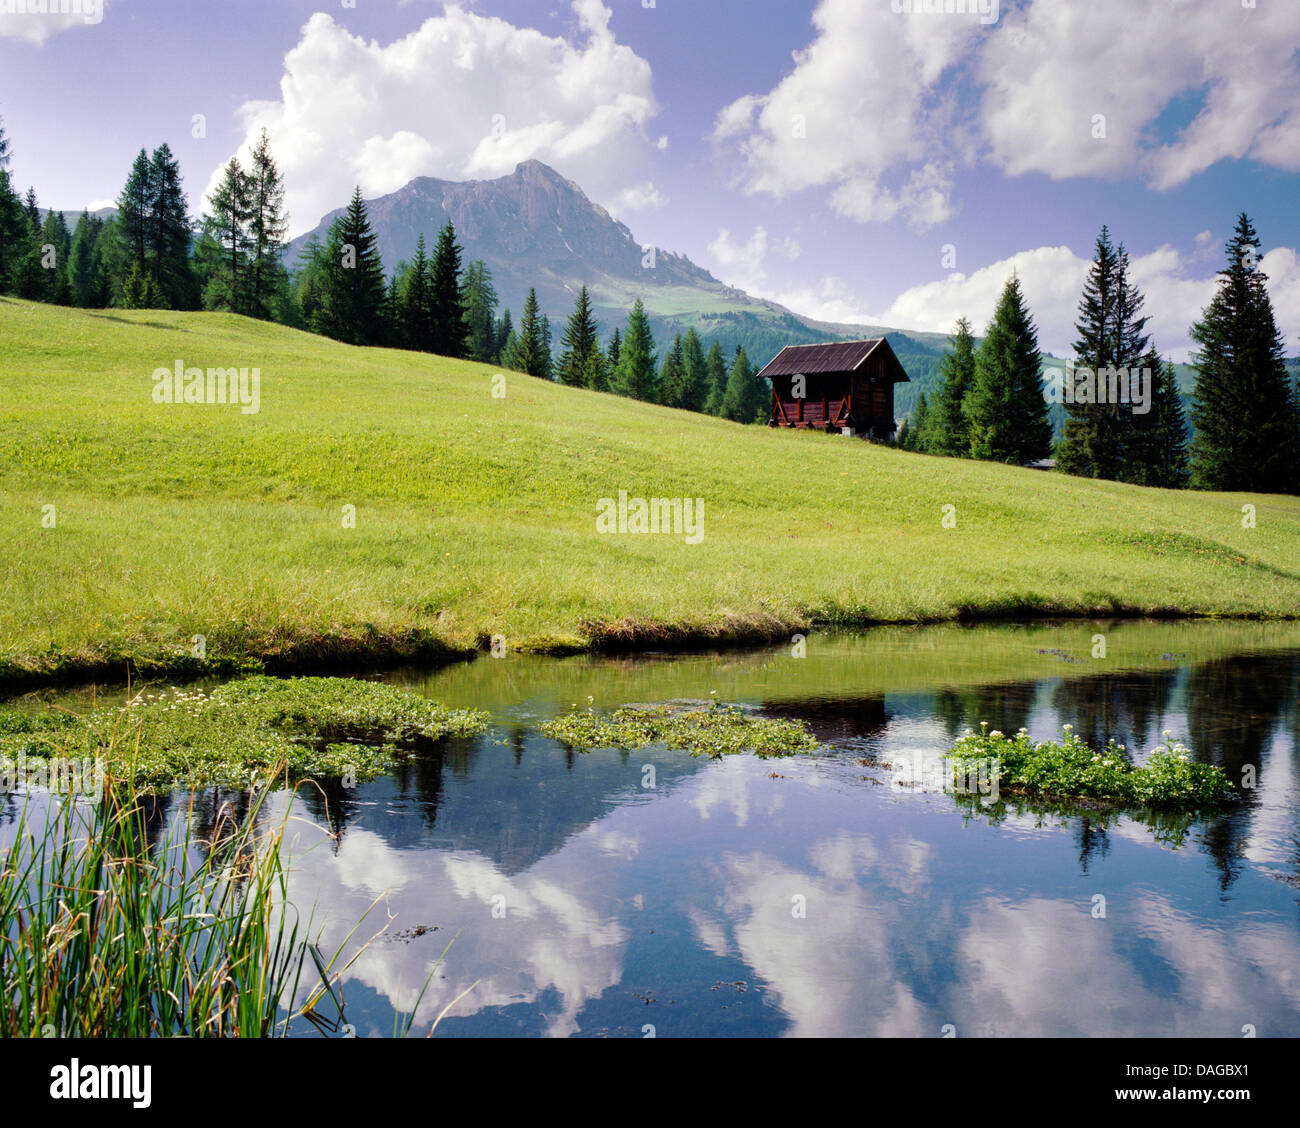 Alpage et cabane en bois dans le parc naturel de l'Puetz-Geisler, Italie, Dolomites Tyrol du Sud, Banque D'Images